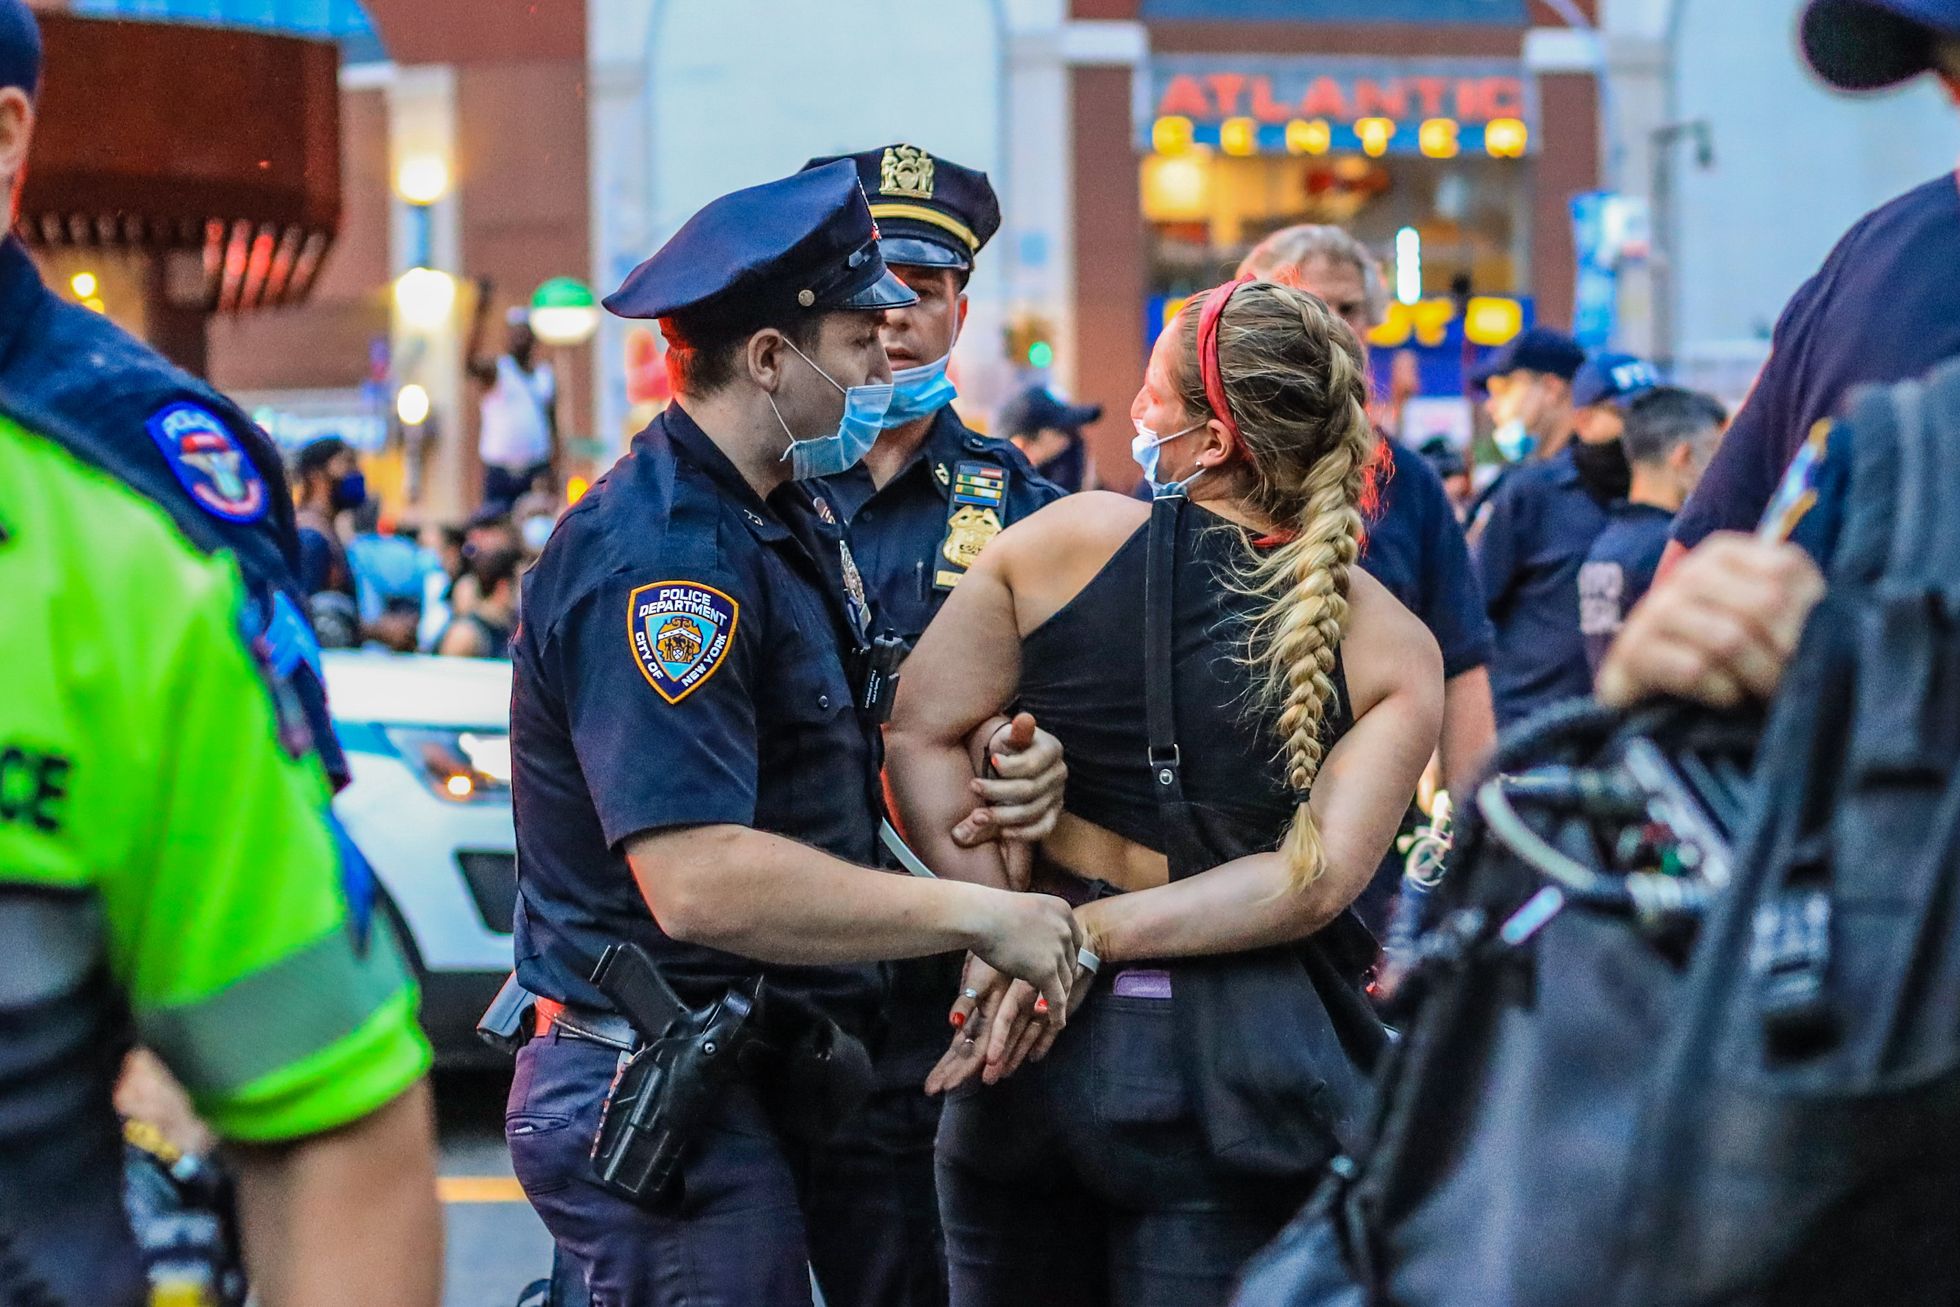 Alates neljapäevast on üle riigi vahistatud üle tuhande meeleavaldaja, kuid laupäevased numbrid puuduvad. Pildil peetakse kinni New Yorgi elanikku.